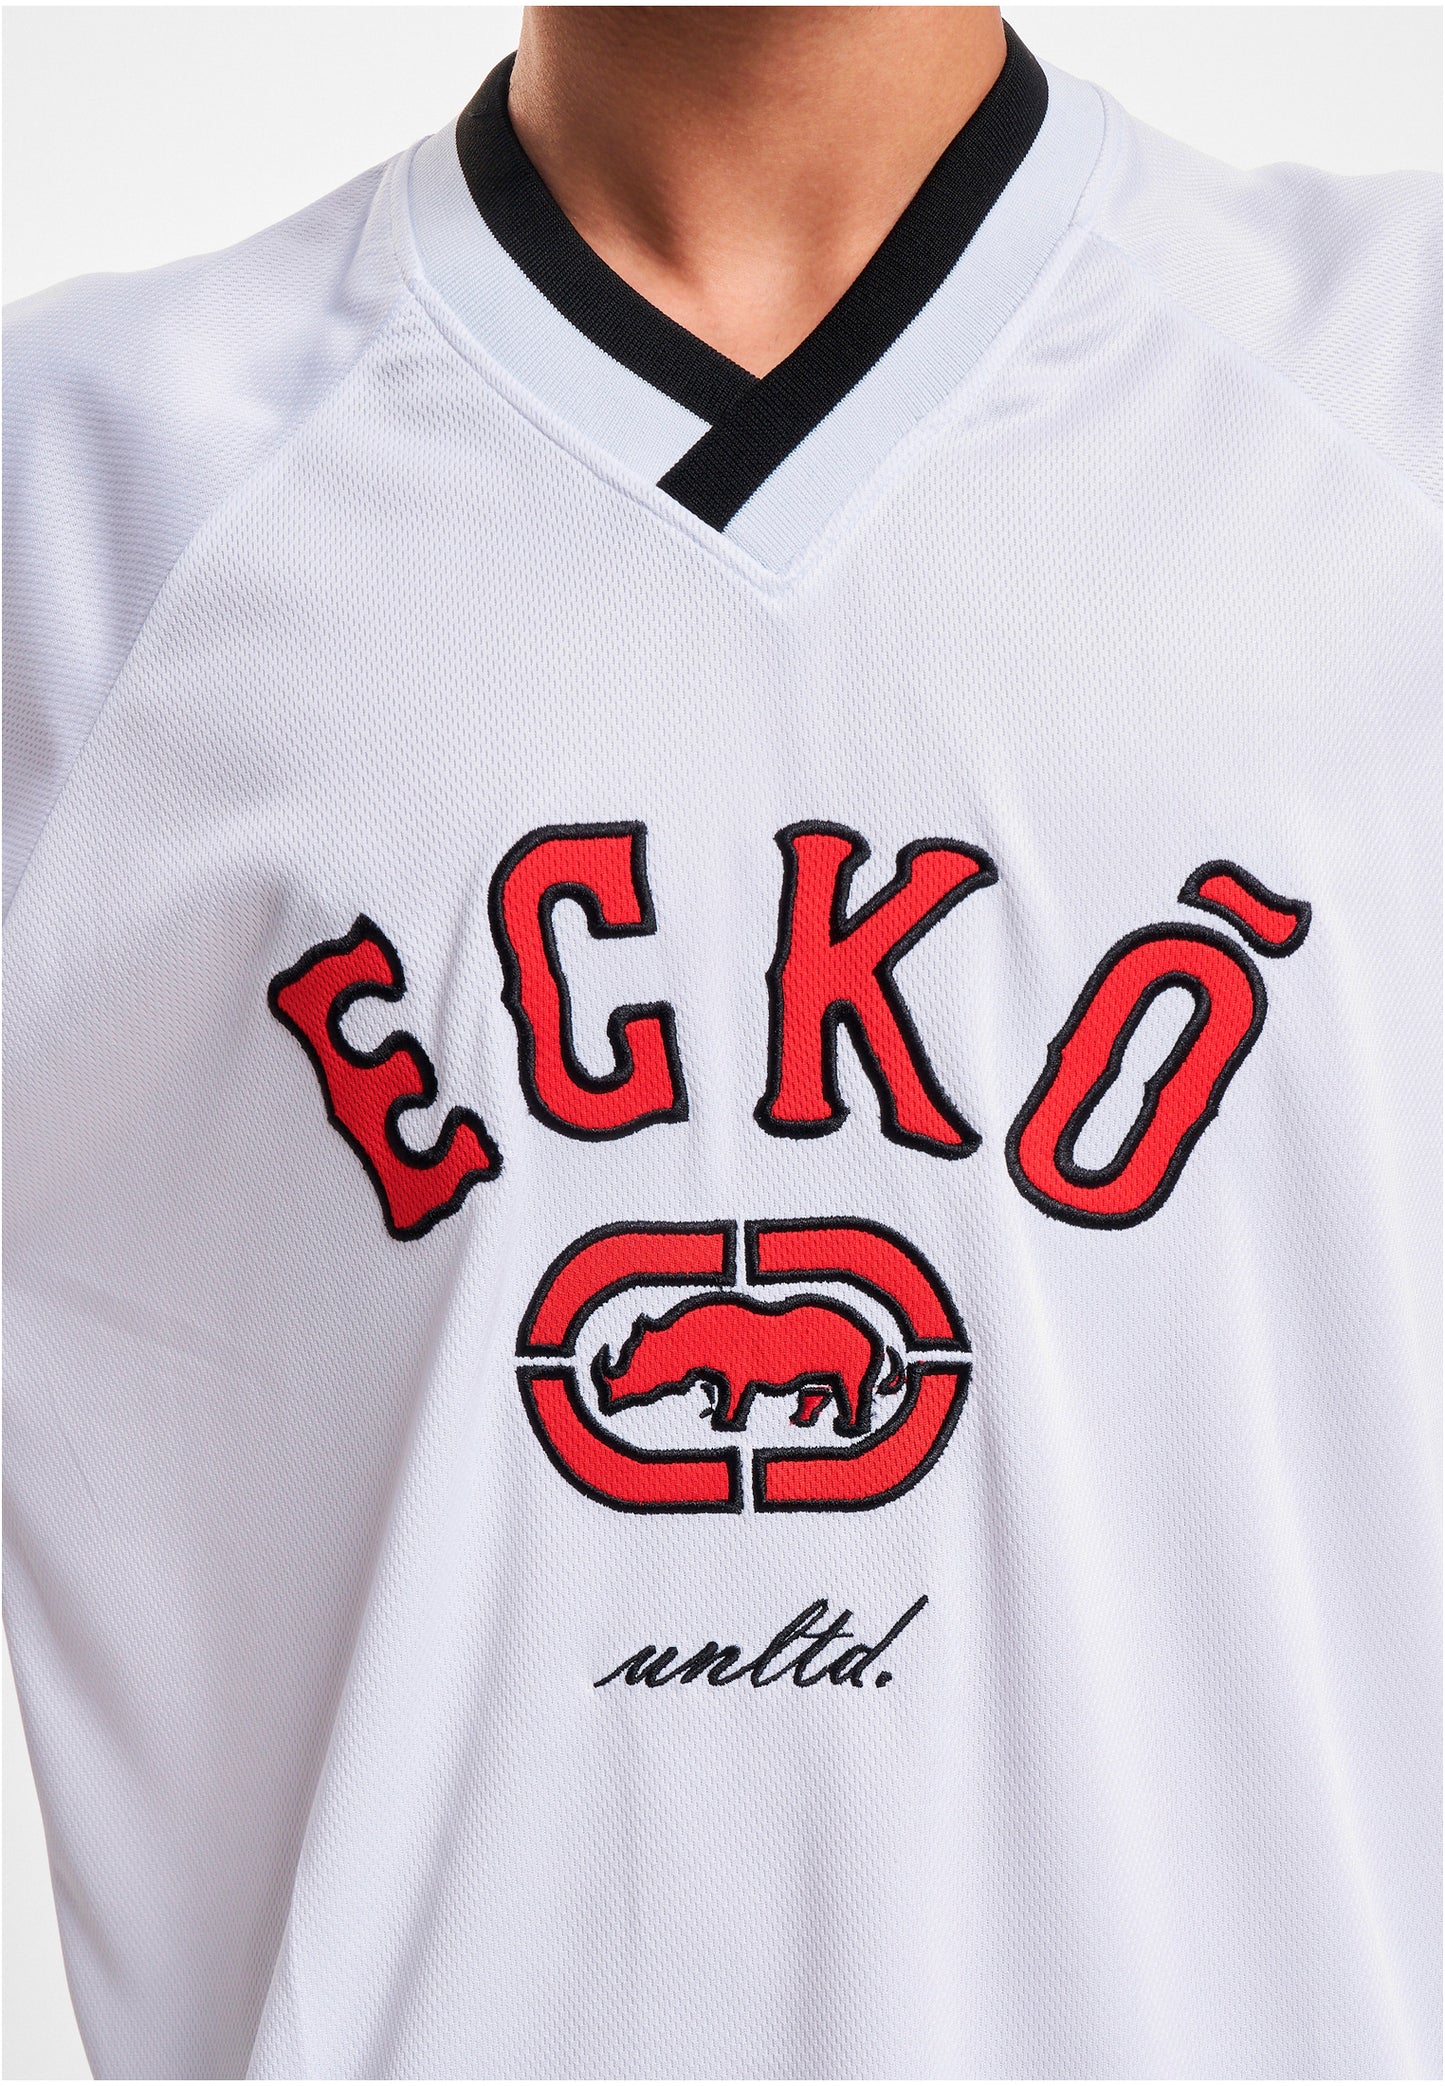 Ecko Unltd. BBall T-Shirt white